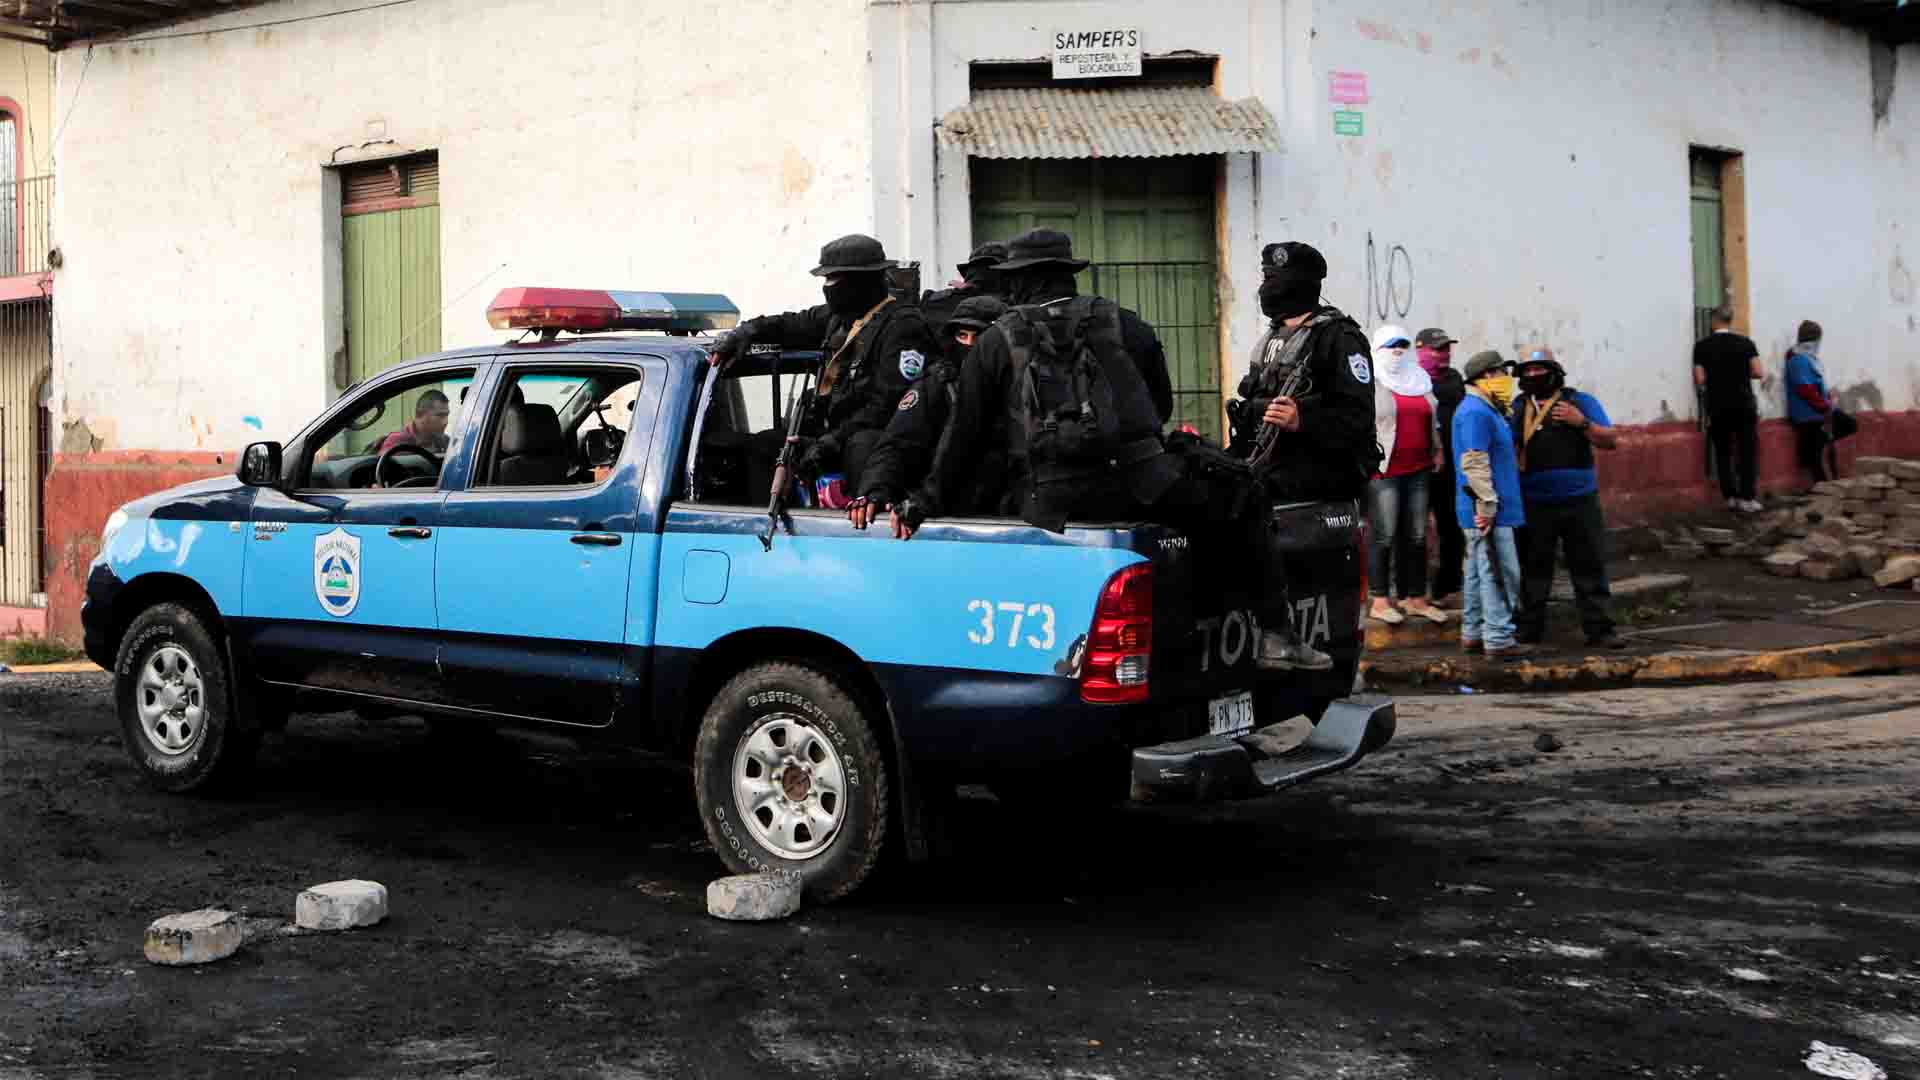 El Gobierno de Nicaragua controla la ciudad de Masaya tras una operación que dejó 2 muertos